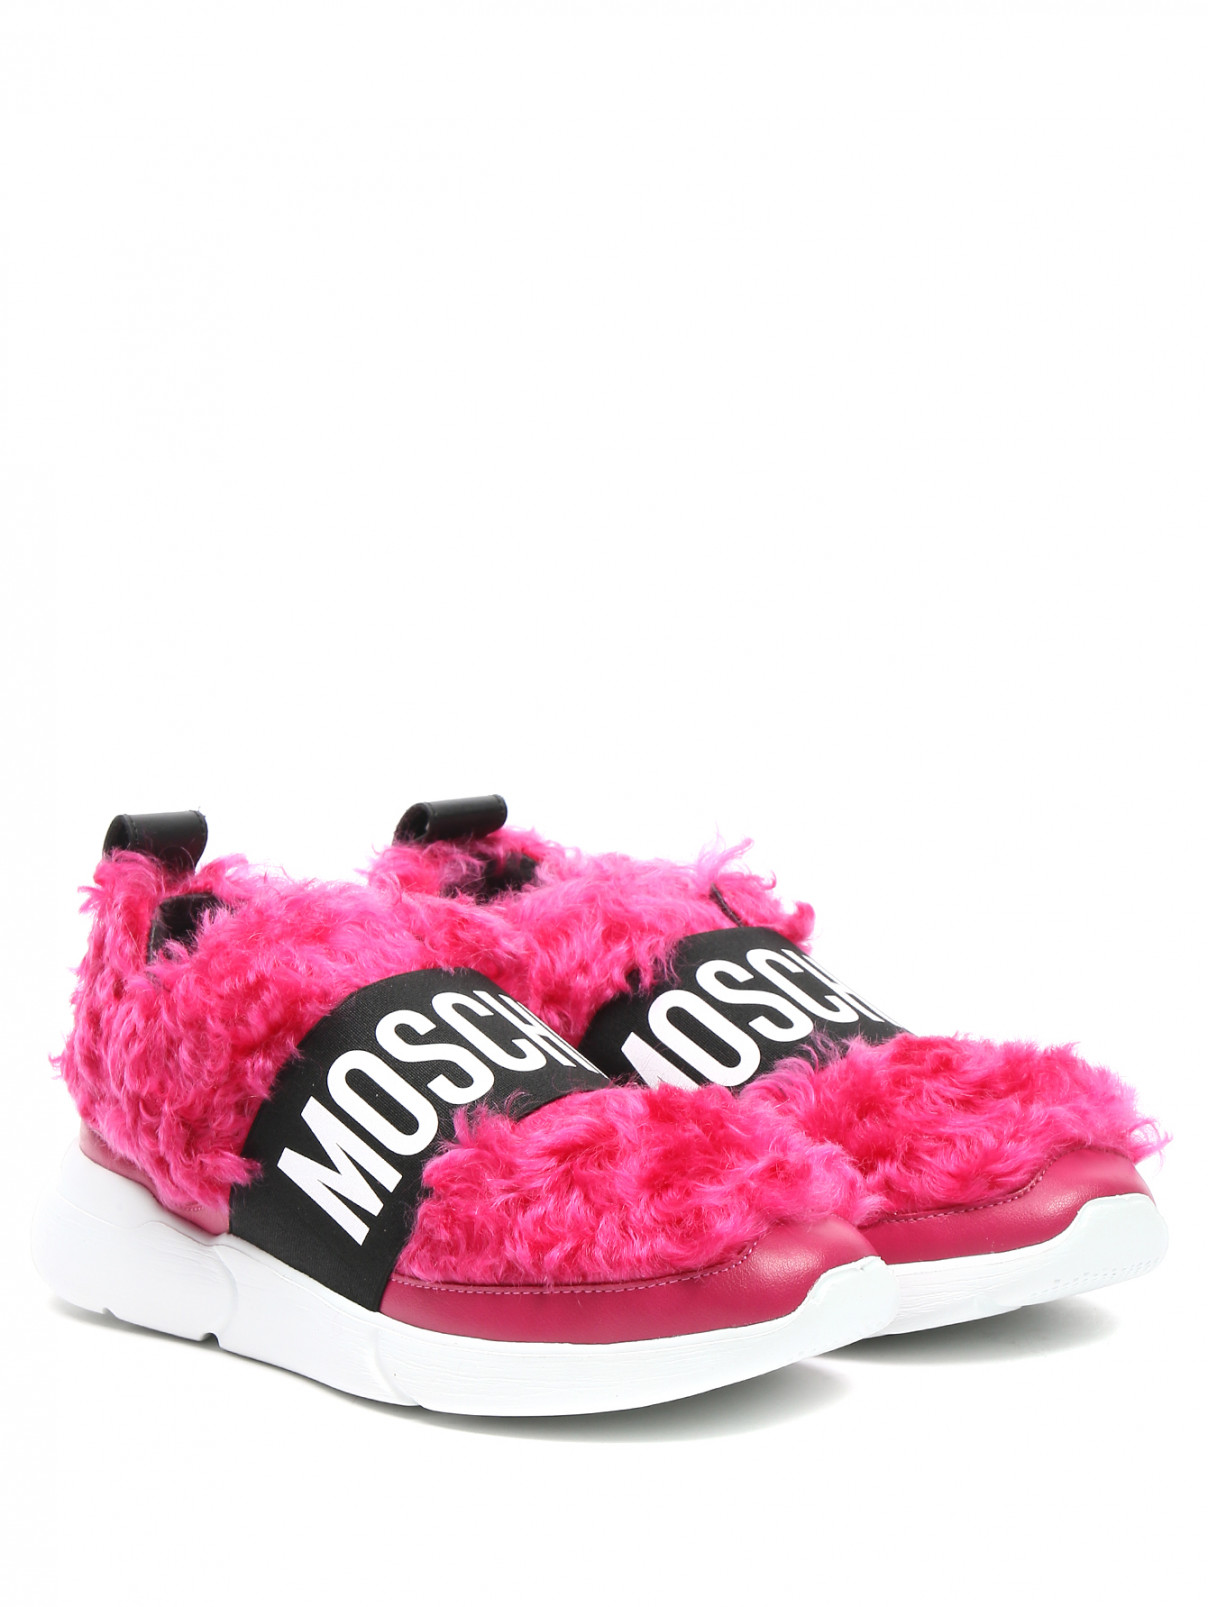 Кроссовки на контрастной подошве с меховой отделкой Moschino Couture  –  Общий вид  – Цвет:  Розовый